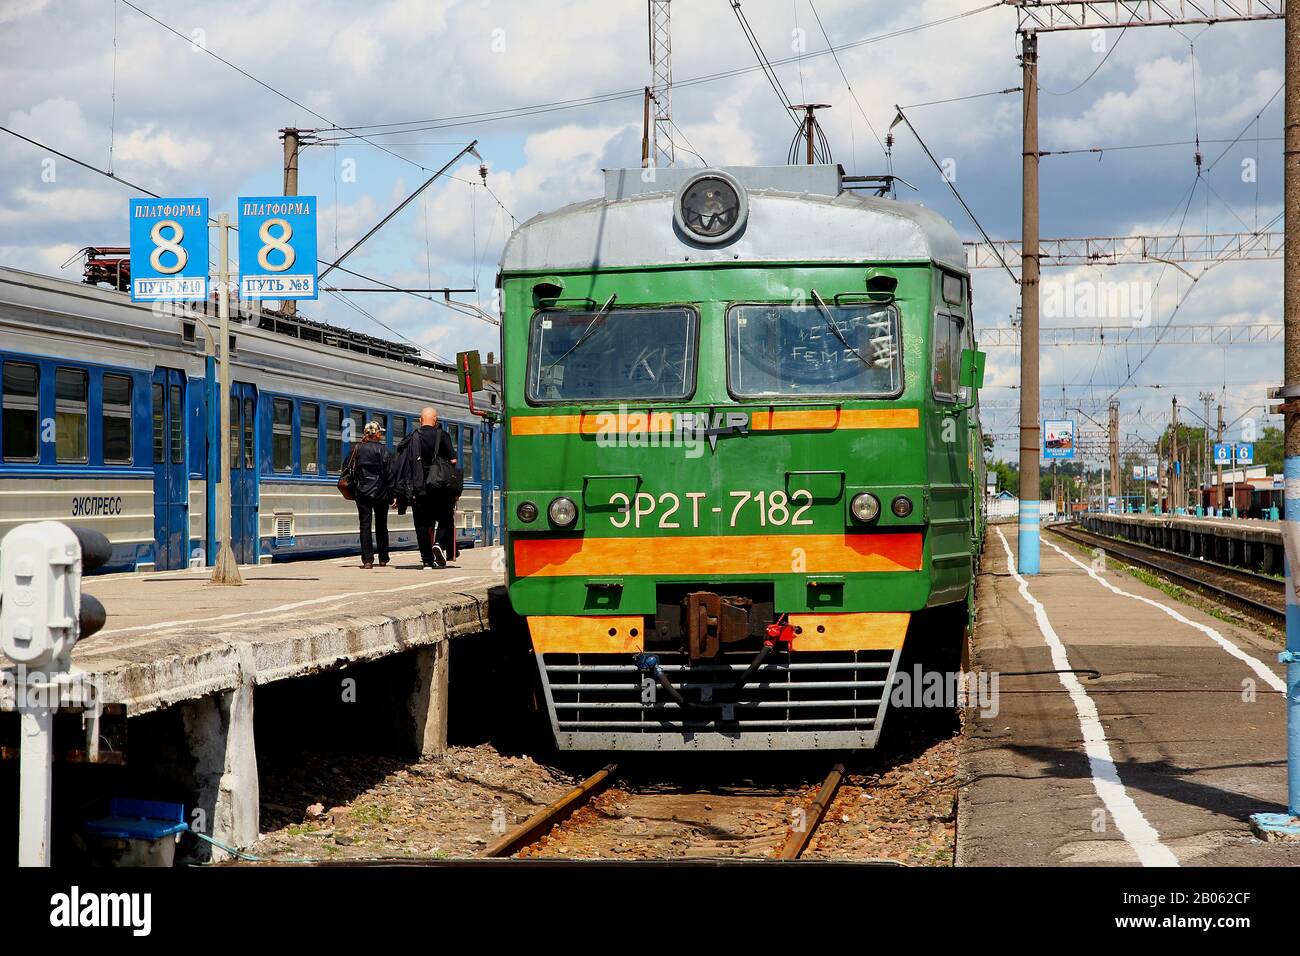 Kaluga, Russia - 1 Jun 2012: The train in Kaluga, Russia Stock Photo